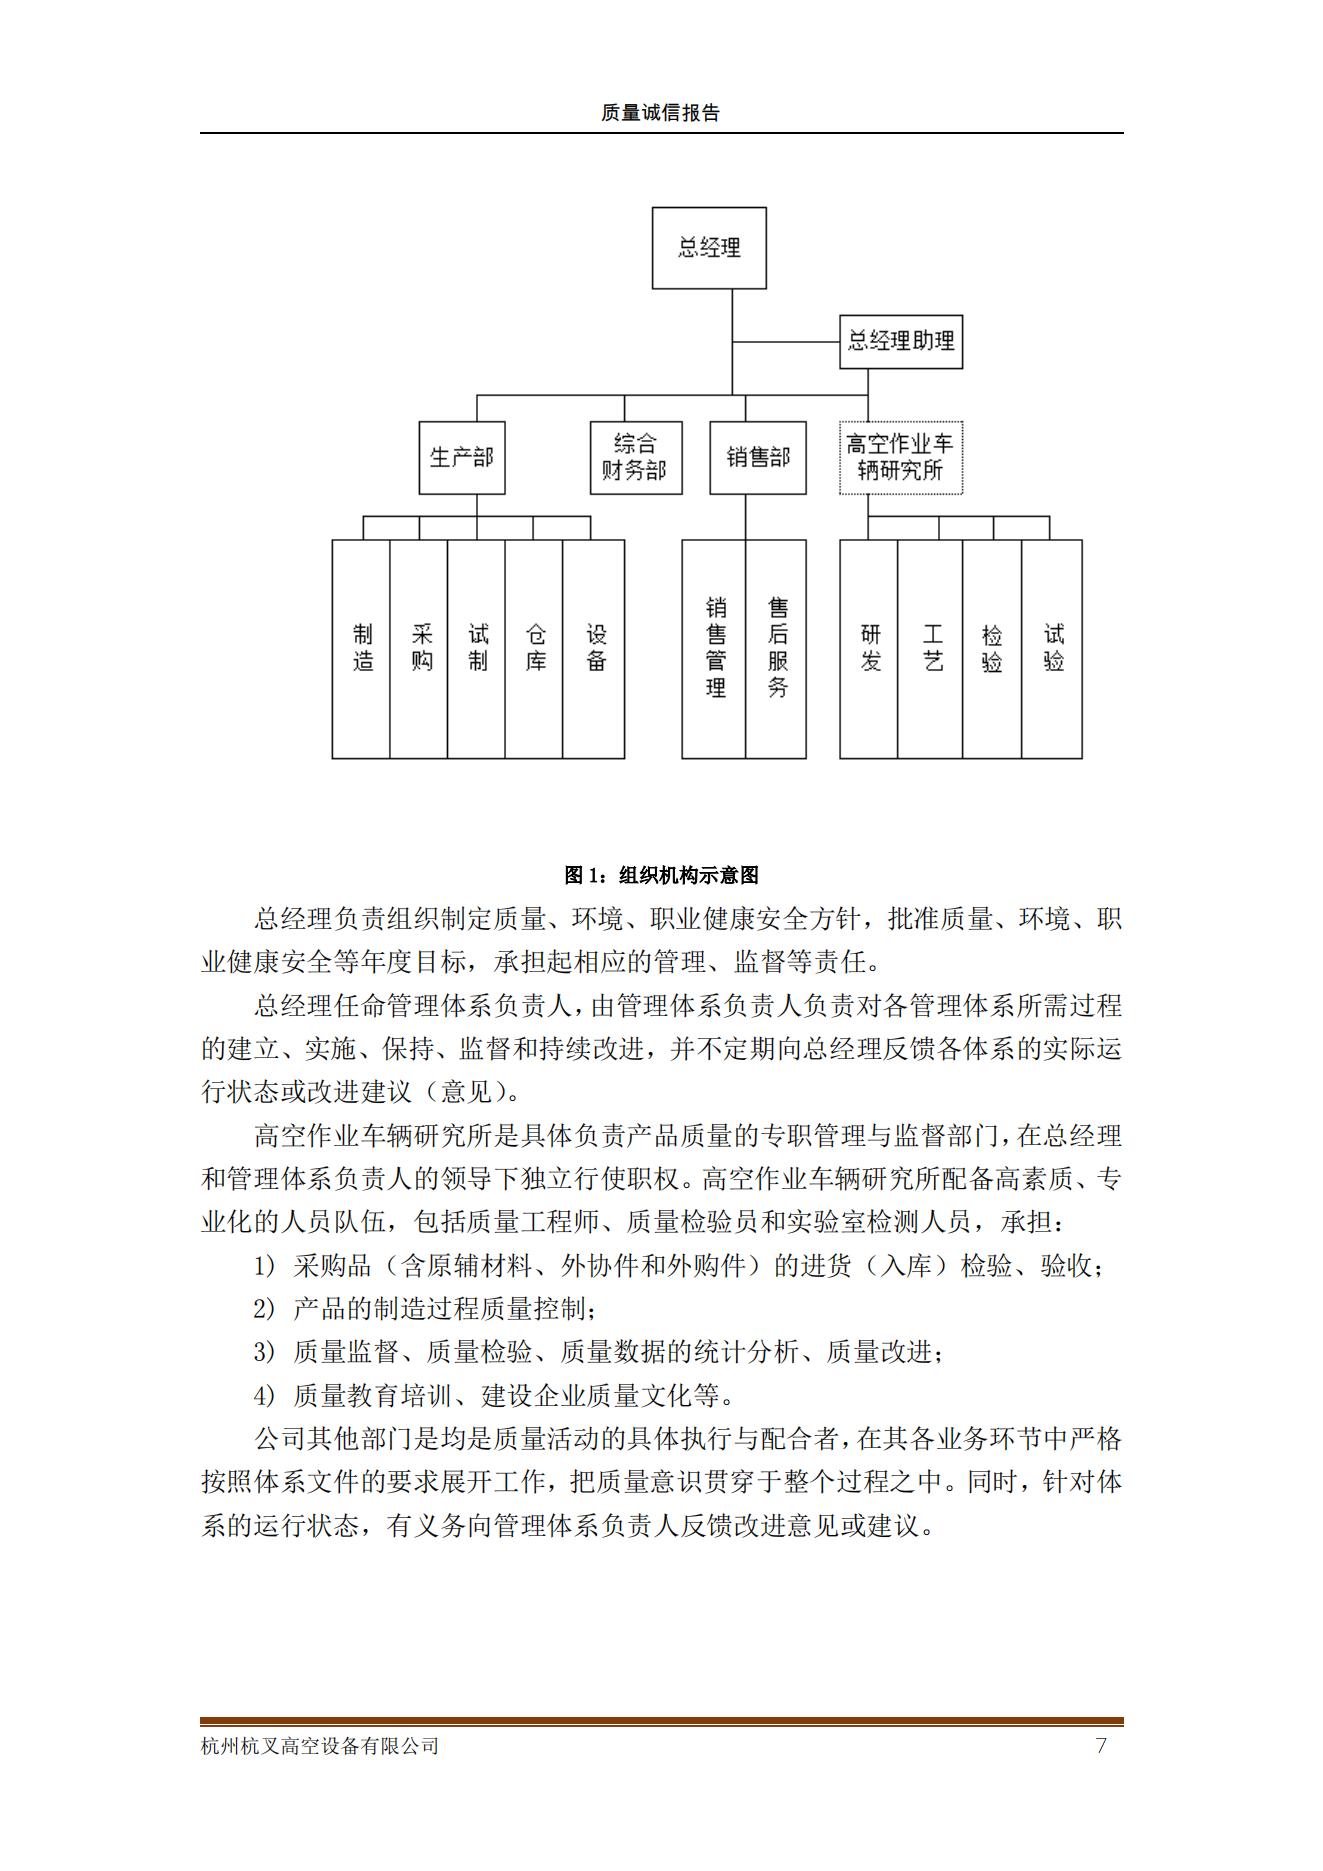 杭州杭叉高空設備公司2021年質量誠信報告(圖7)